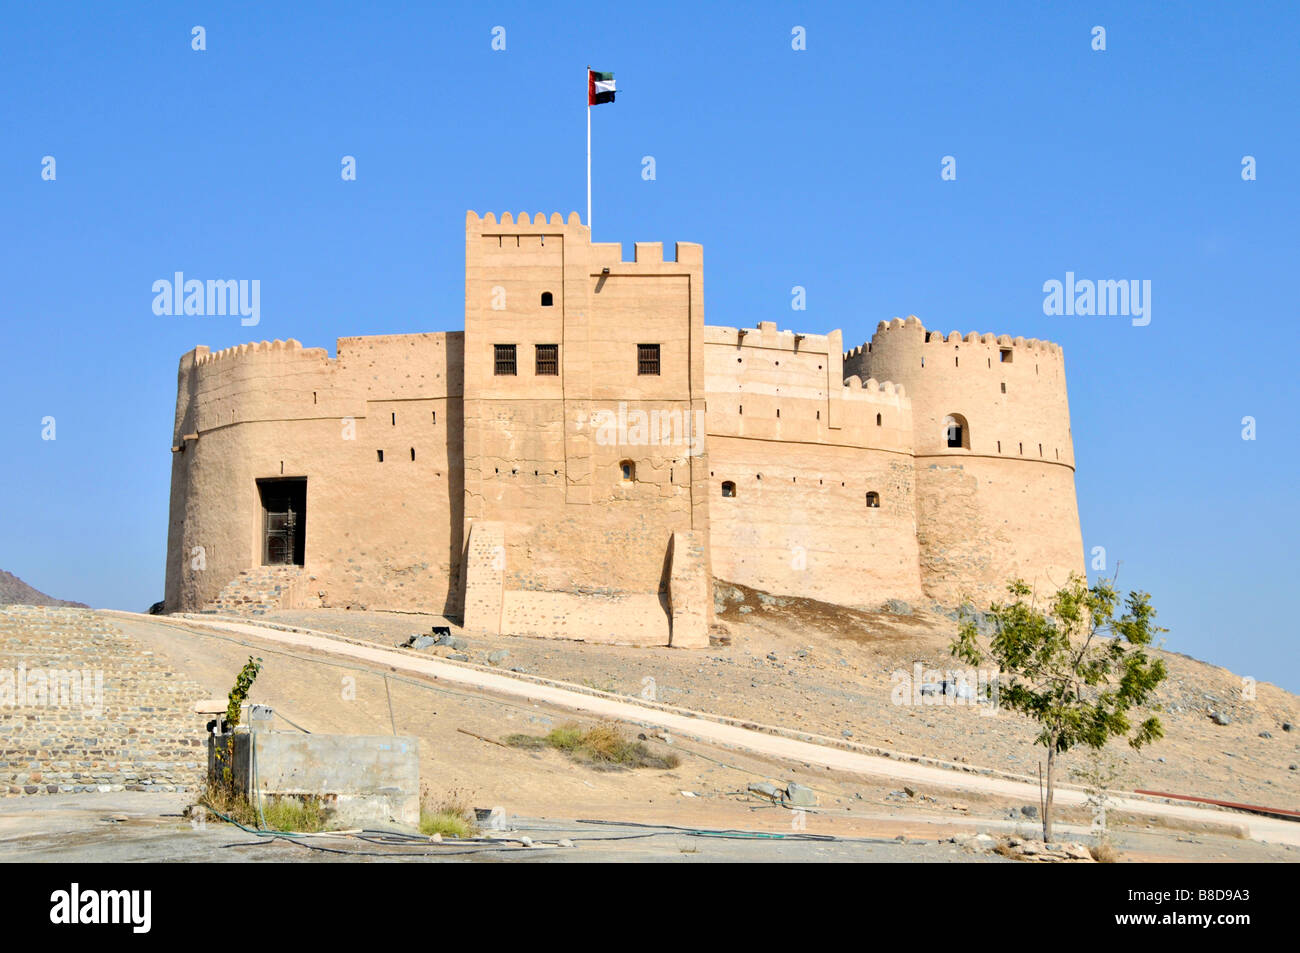 Antico storico 16 ° secolo Fujairah Fort o castello un giro turistico Attrazione turistica restaurata e mantenuta dal Dipartimento delle Antichità & Patrimonio degli Emirati Arabi Uniti Foto Stock